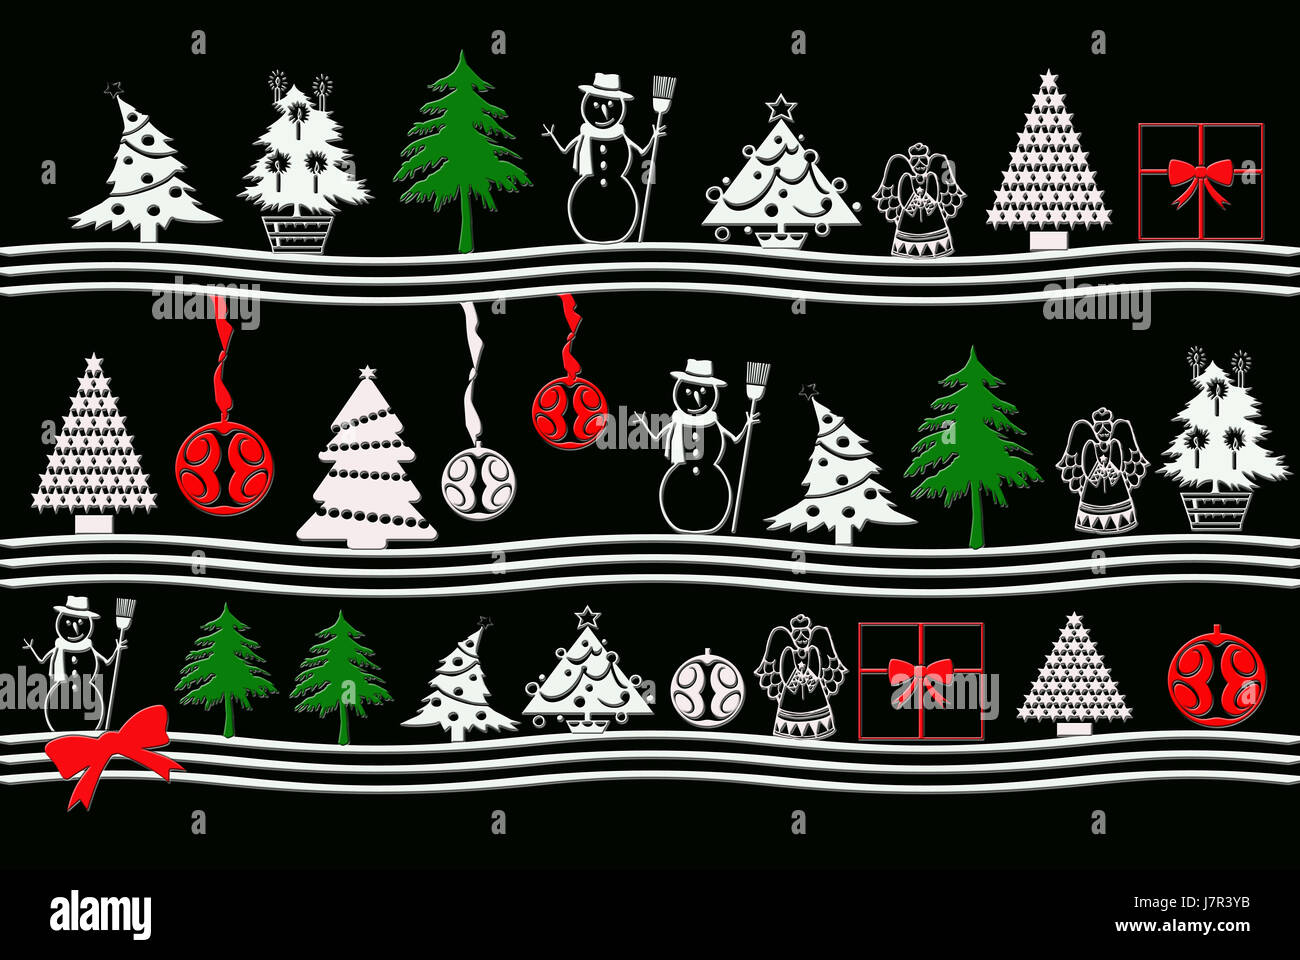 Symbole Weihnachten Karte Weihnachten Weihnachten x-mas Grafik farbig bunt wunderschön Stockfoto